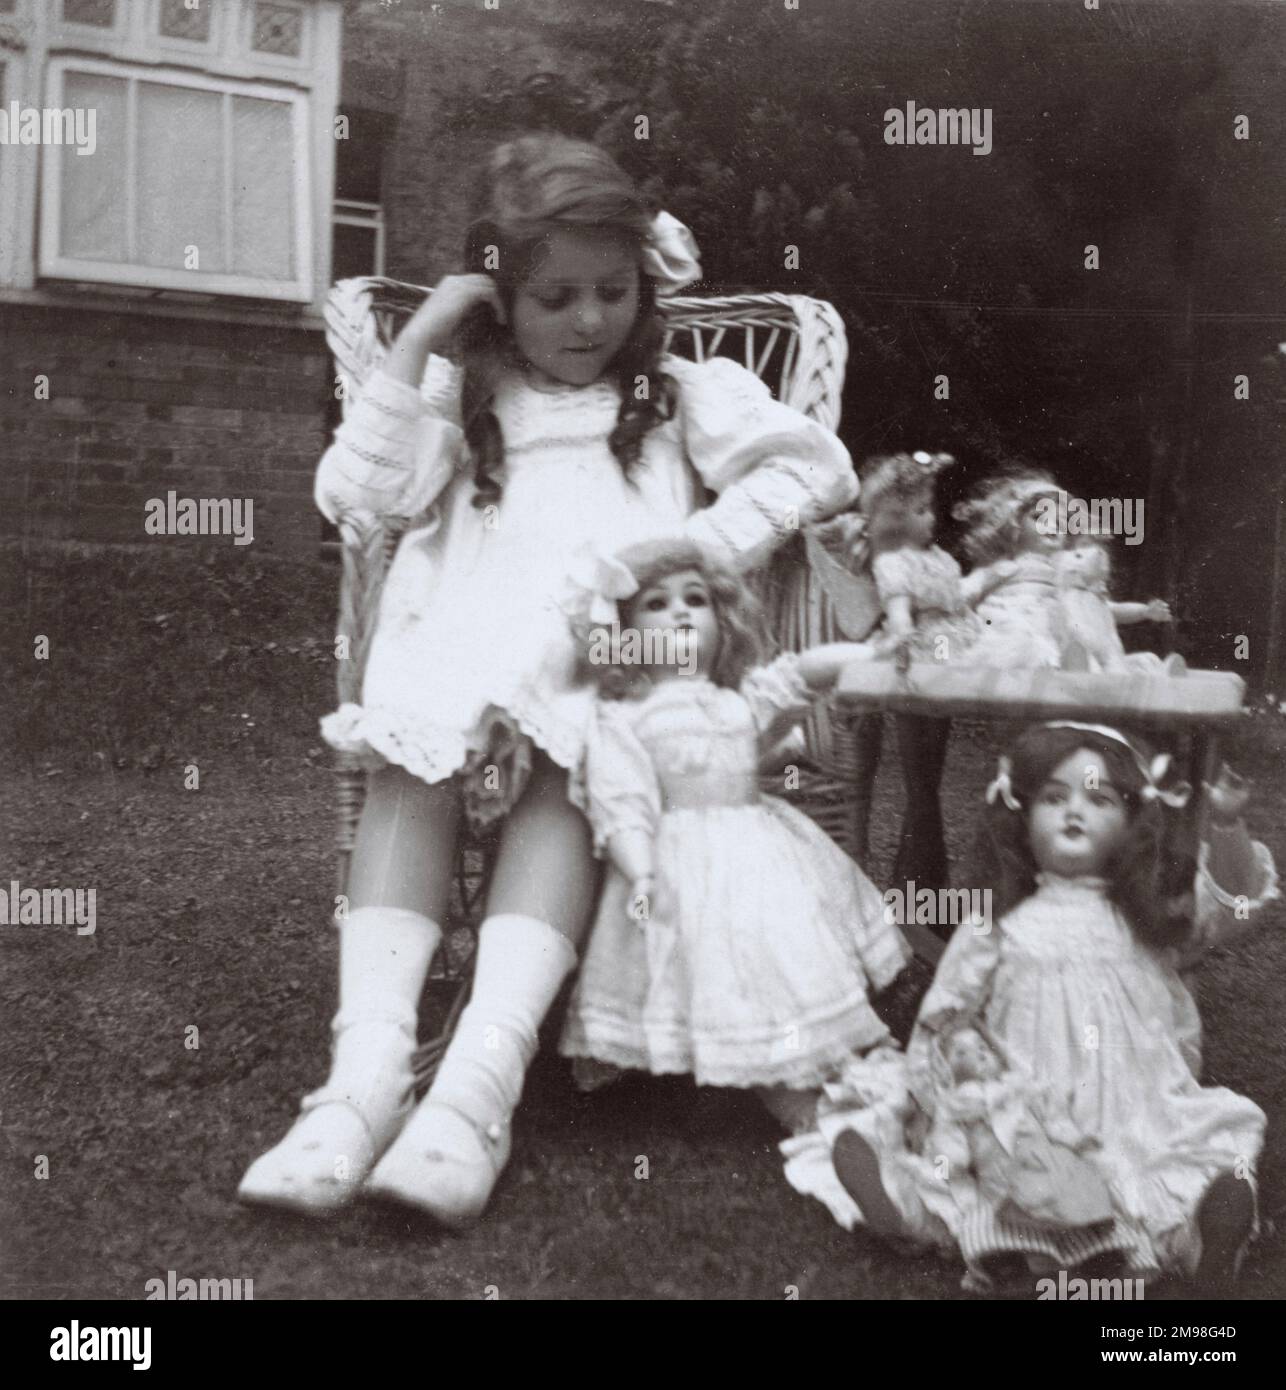 Kleines Mädchen (Violet Auerbach) mit ihren Puppen in einem Garten. Stockfoto